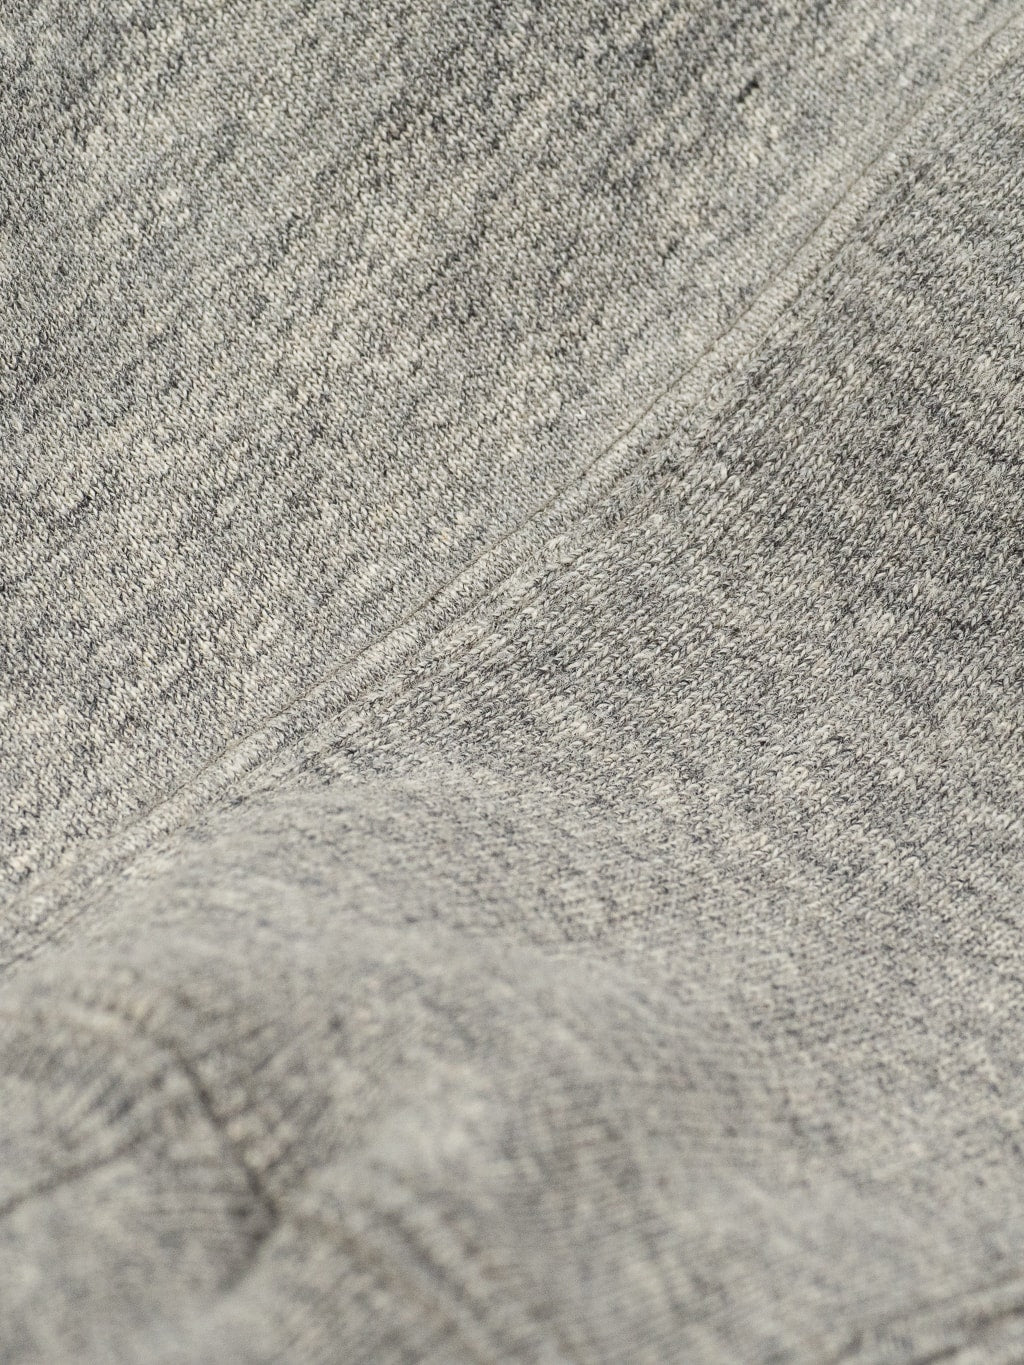 UES Puca Purcara Loopwheeled Sweatshirt grey heavyweight fabric closeup